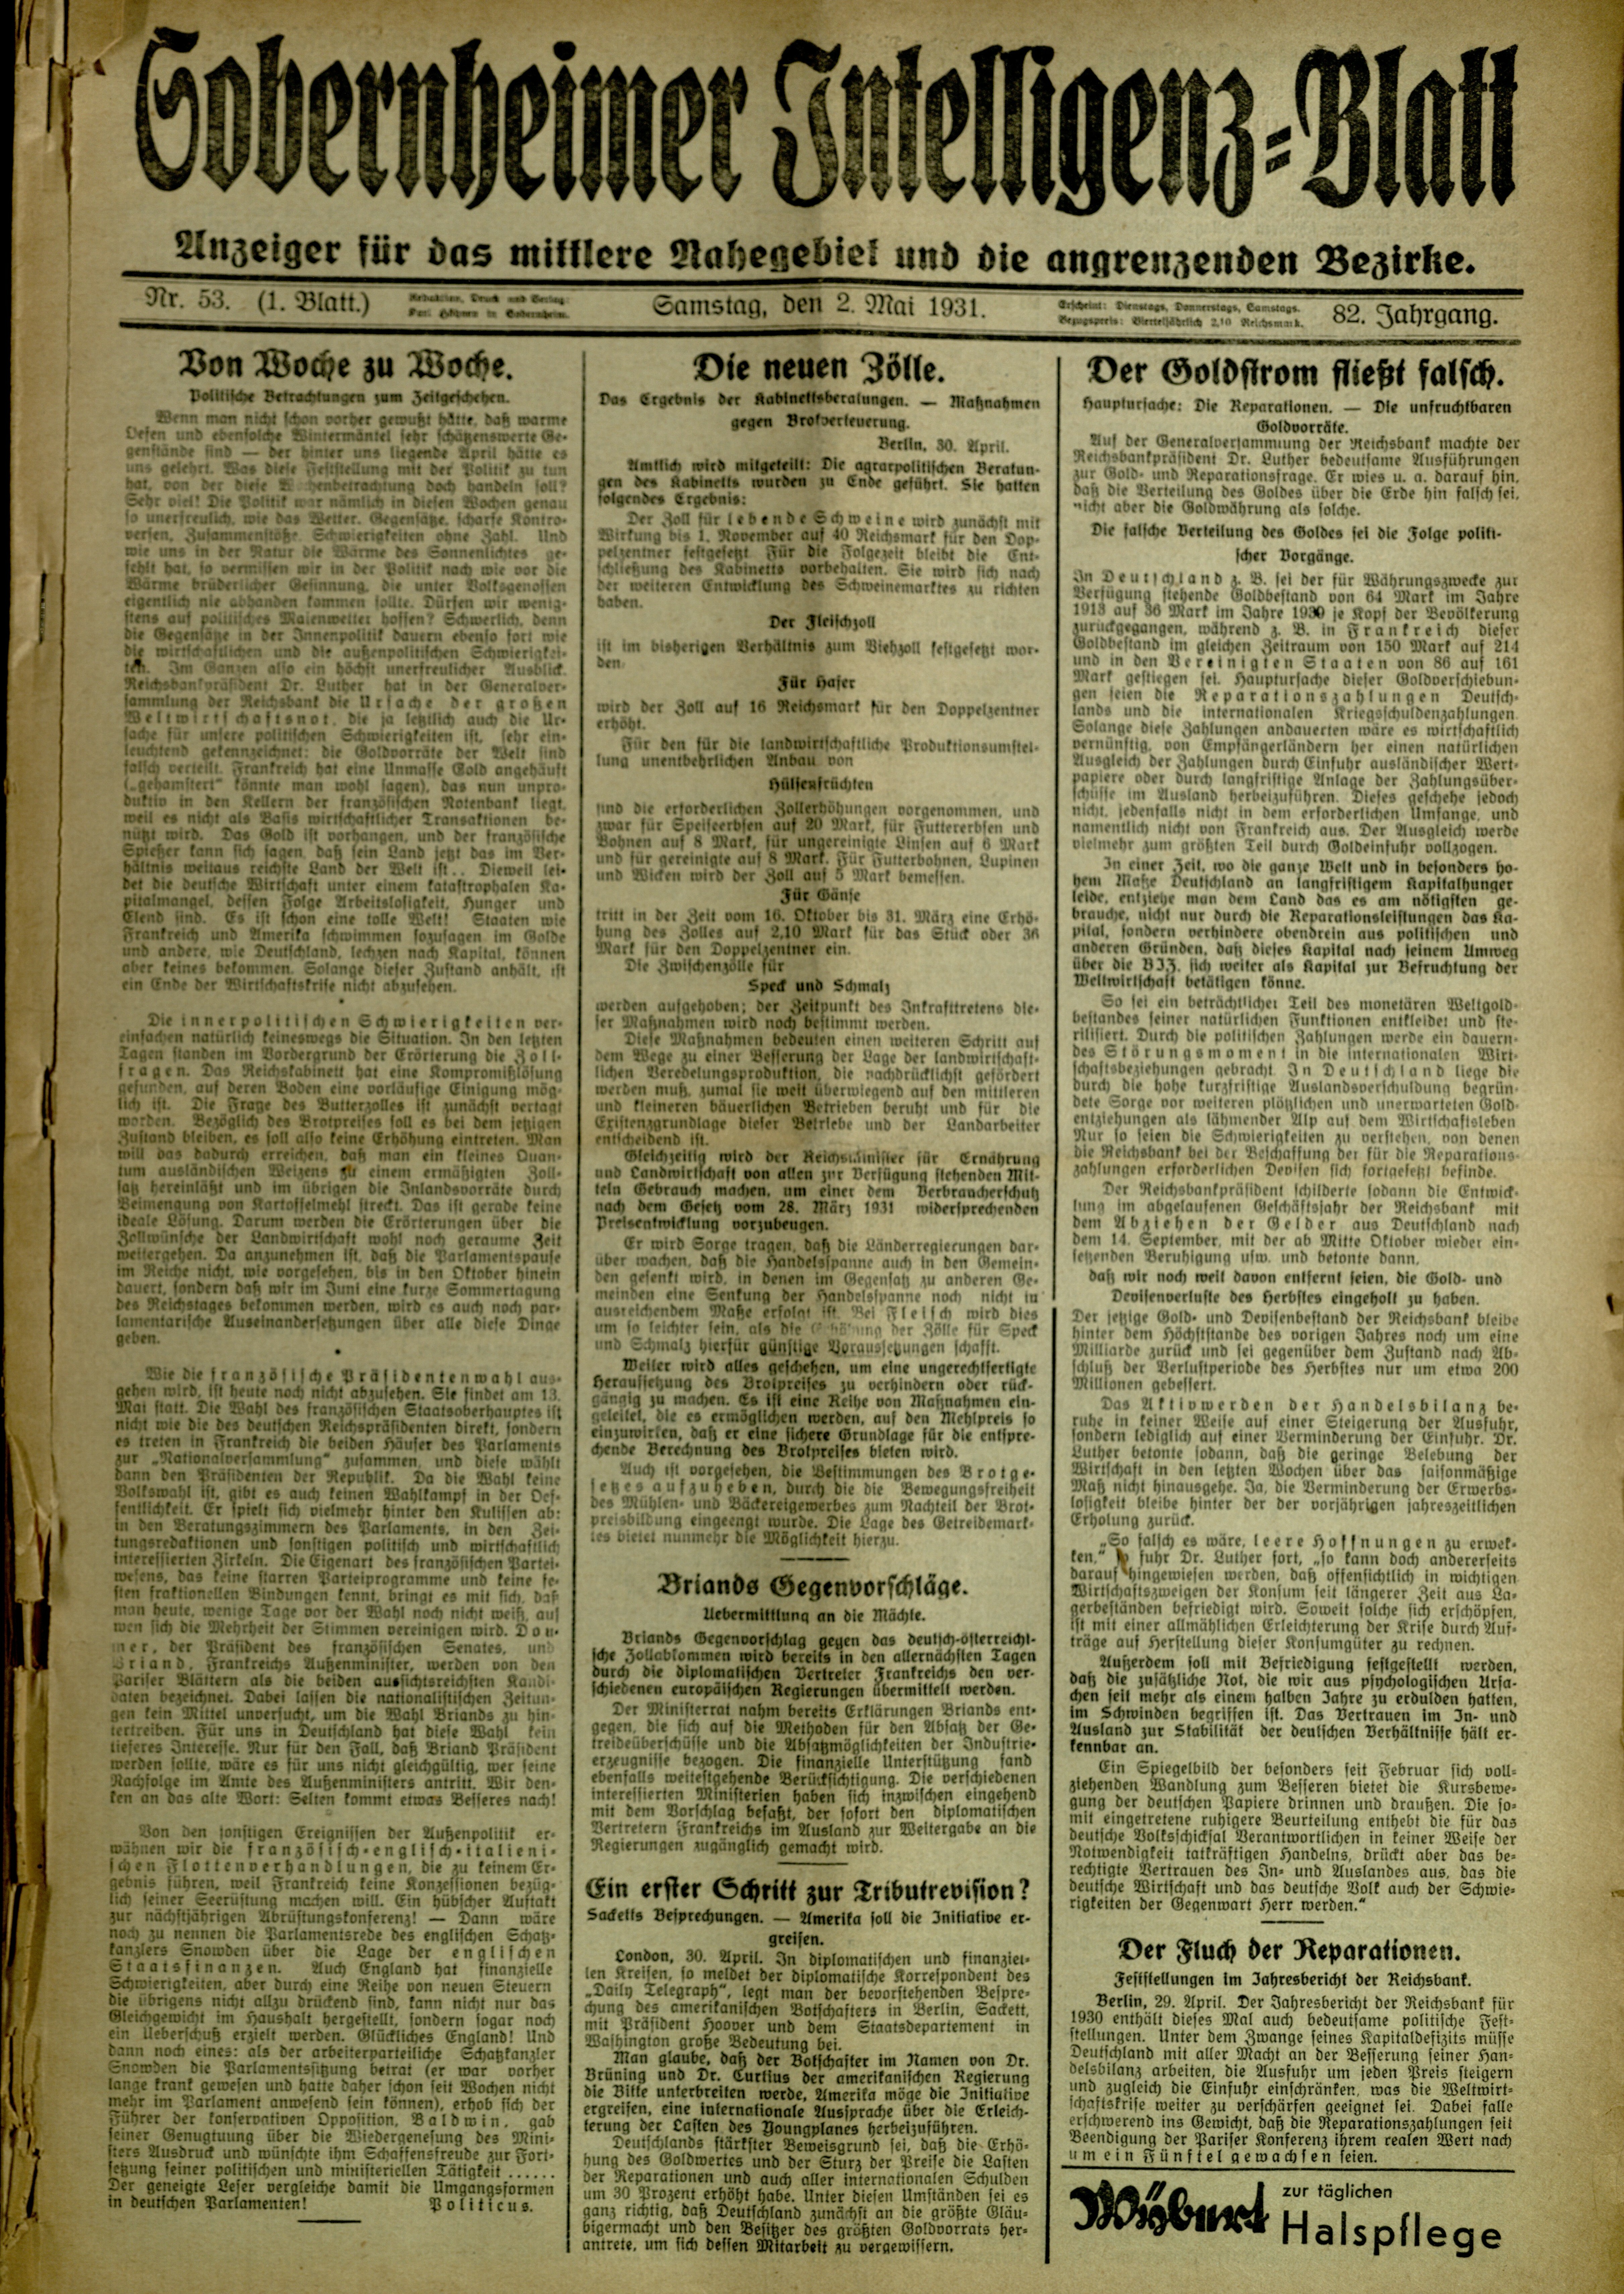 Zeitung: Sobernheimer Intelligenzblatt; Mai 1931, Jg. 79 Nr. 53 (Heimatmuseum Bad Sobernheim CC BY-NC-SA)